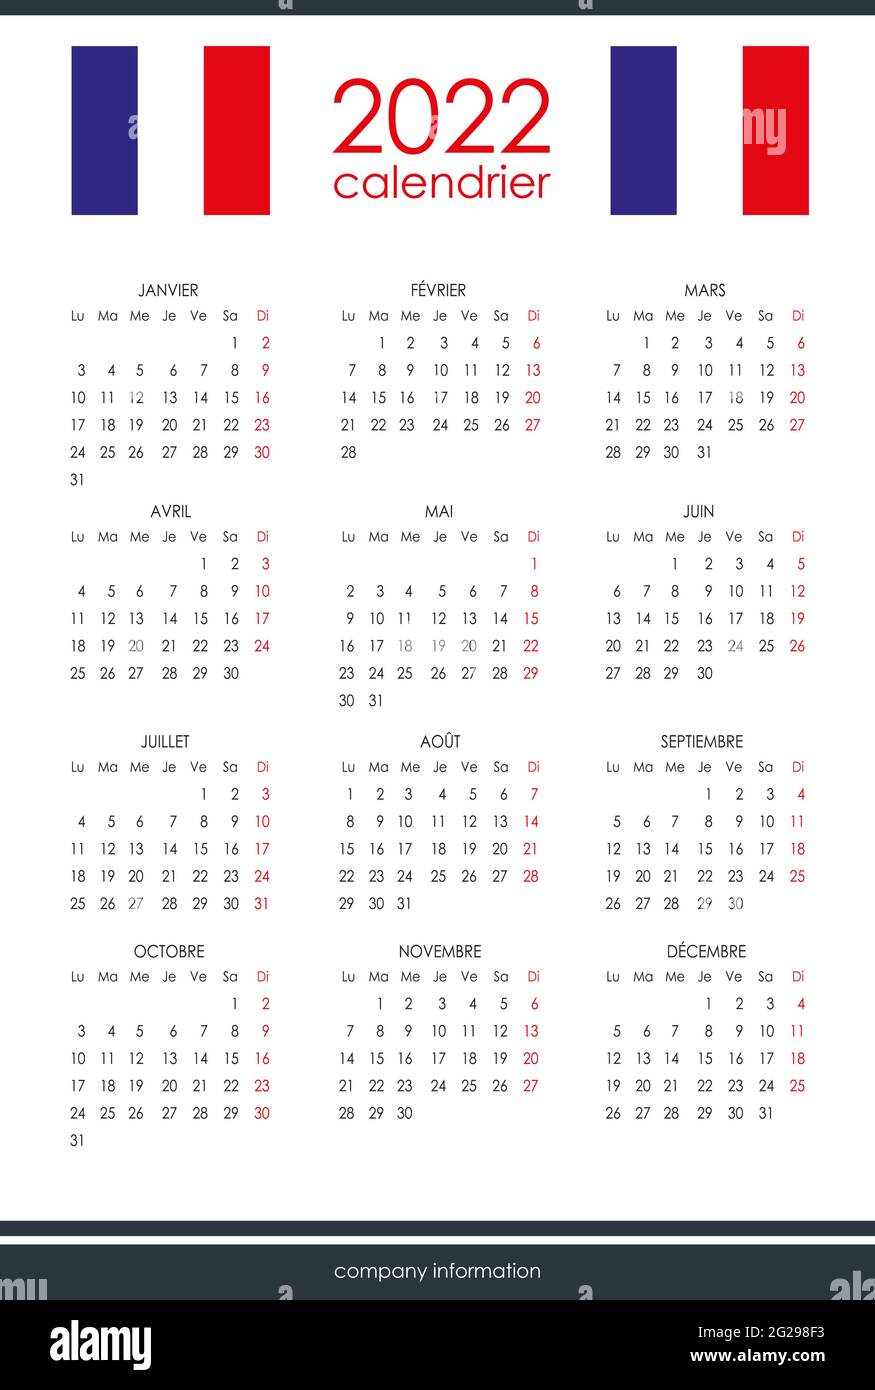 Calendario francés para 2022. 12 meses en una página. Fin de semana a partir  de lunes. Estilo limpio y transparente. Diseño de calendario monocromo.  Domingo rojo Imagen Vector de stock - Alamy